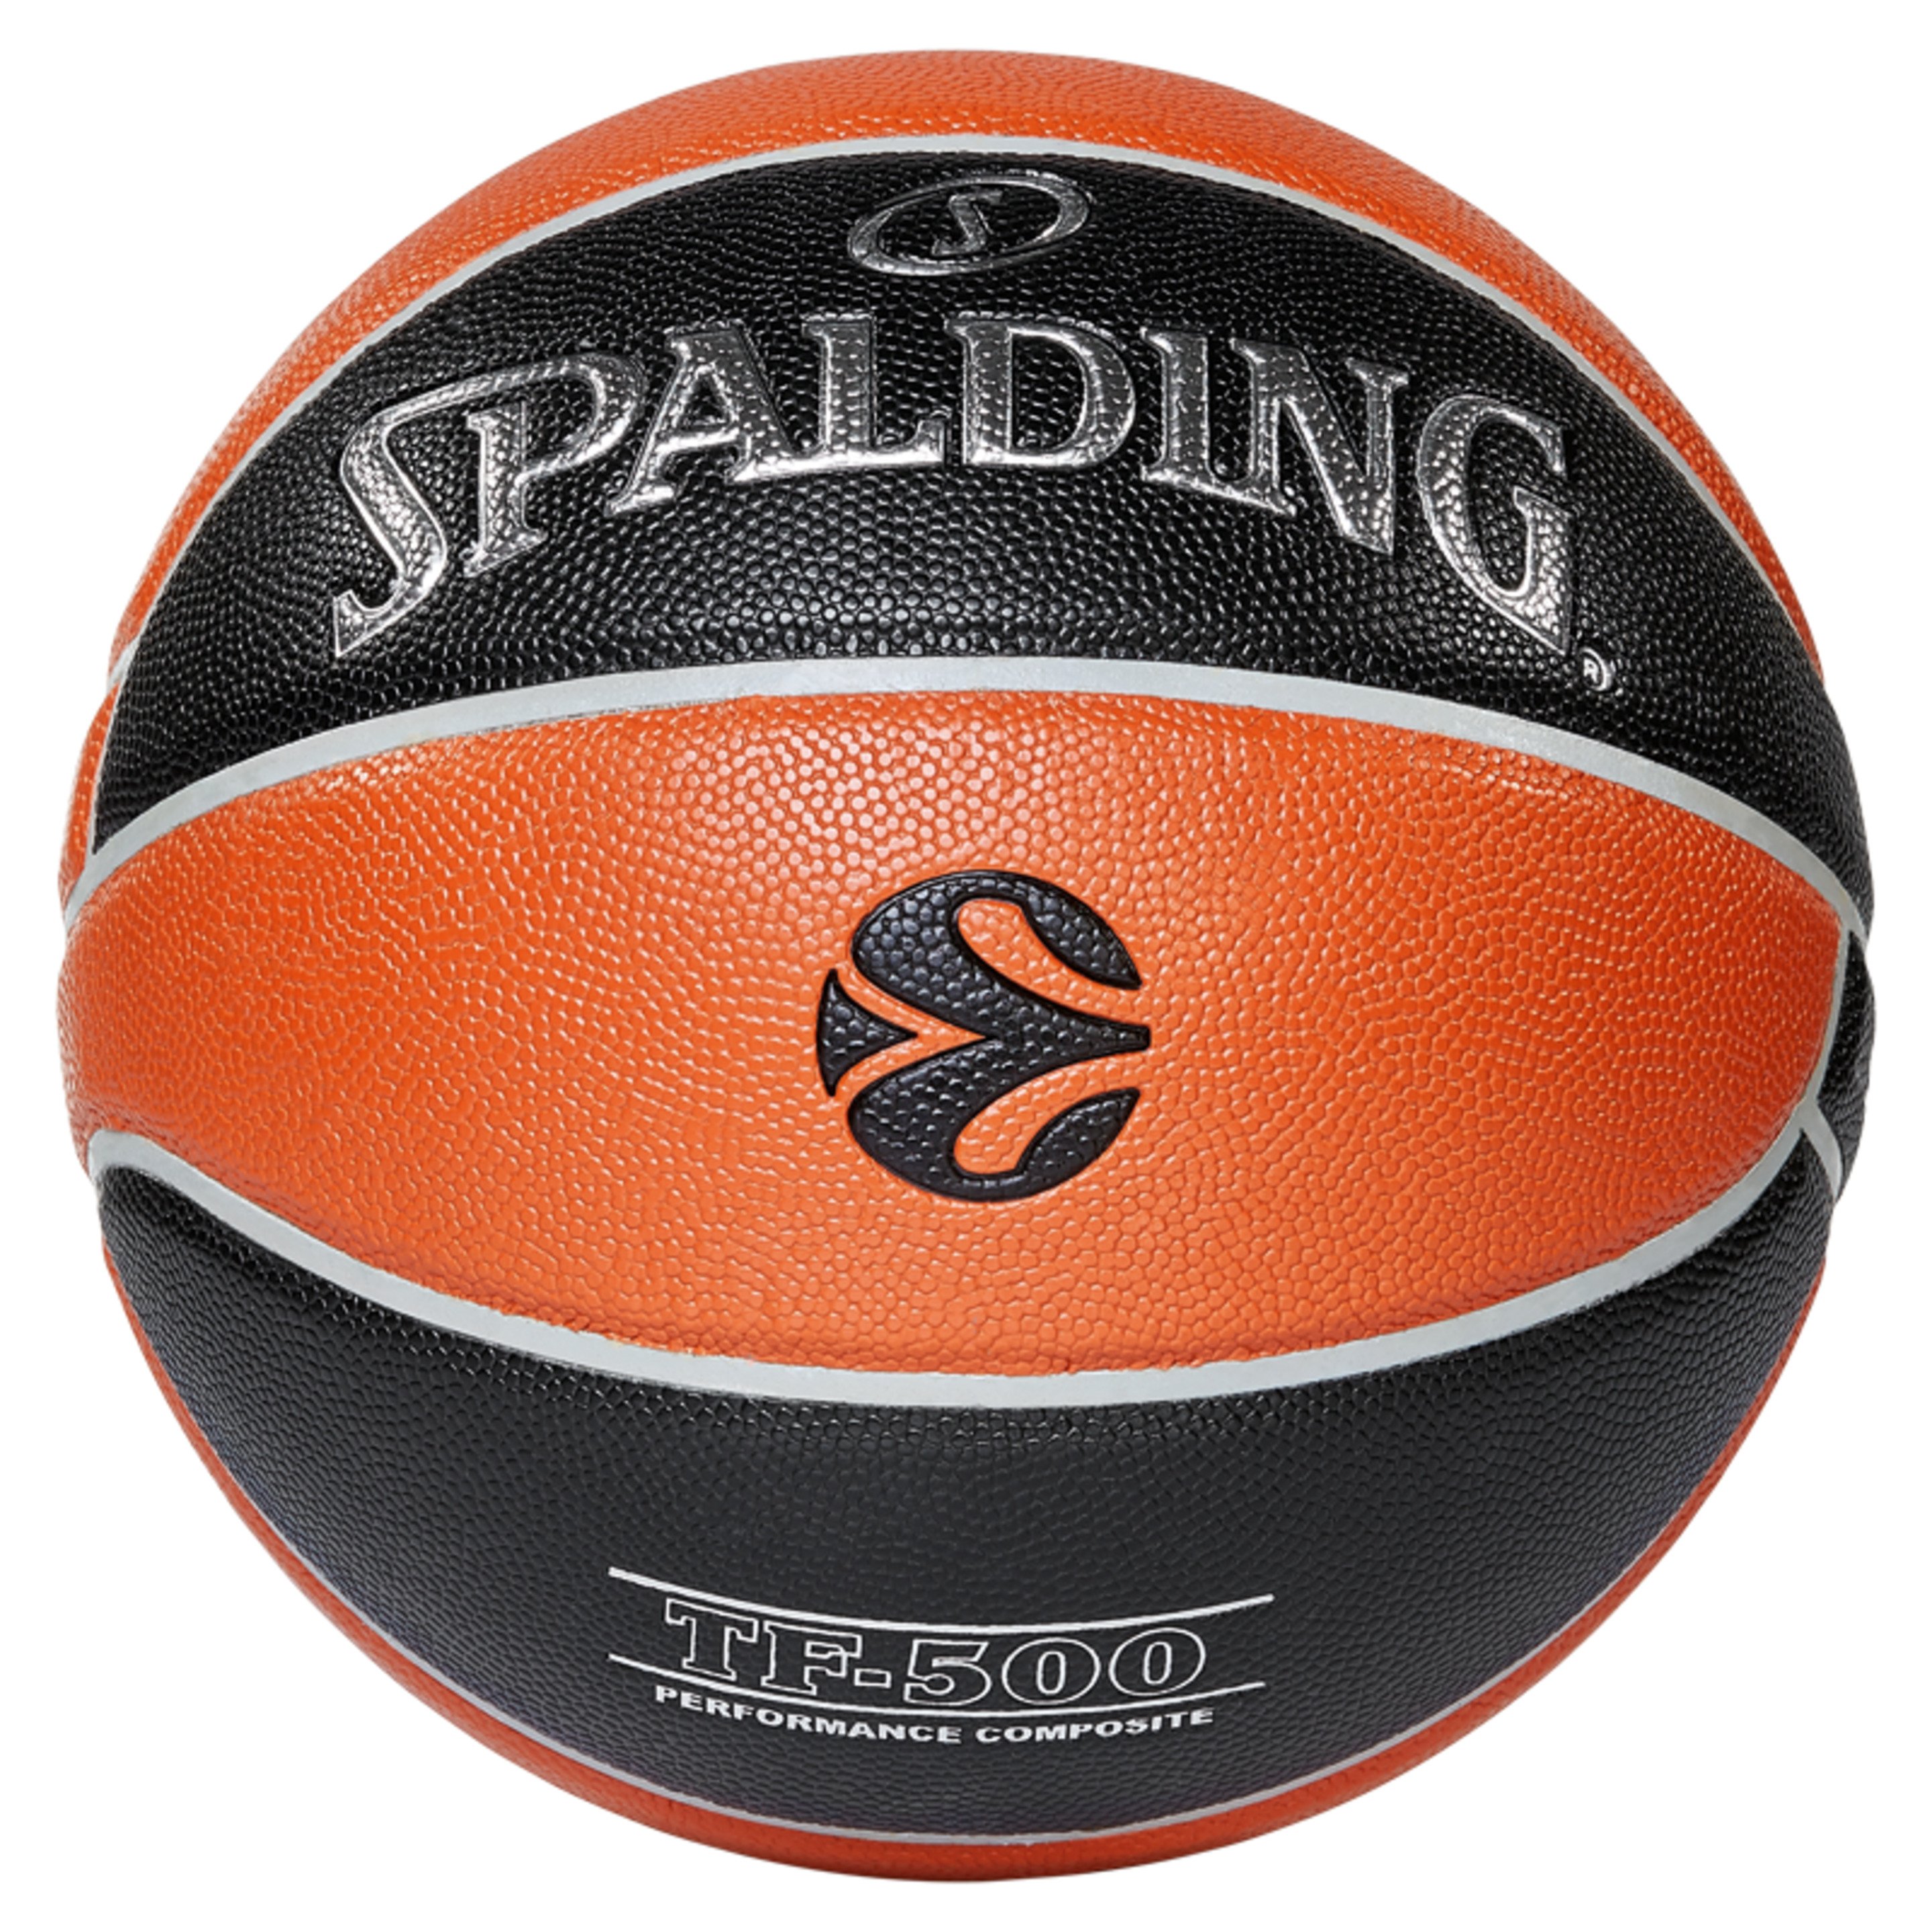 Balón De Baloncesto Euroleague Tf 500 In/out Sz. 7 (84-002z)